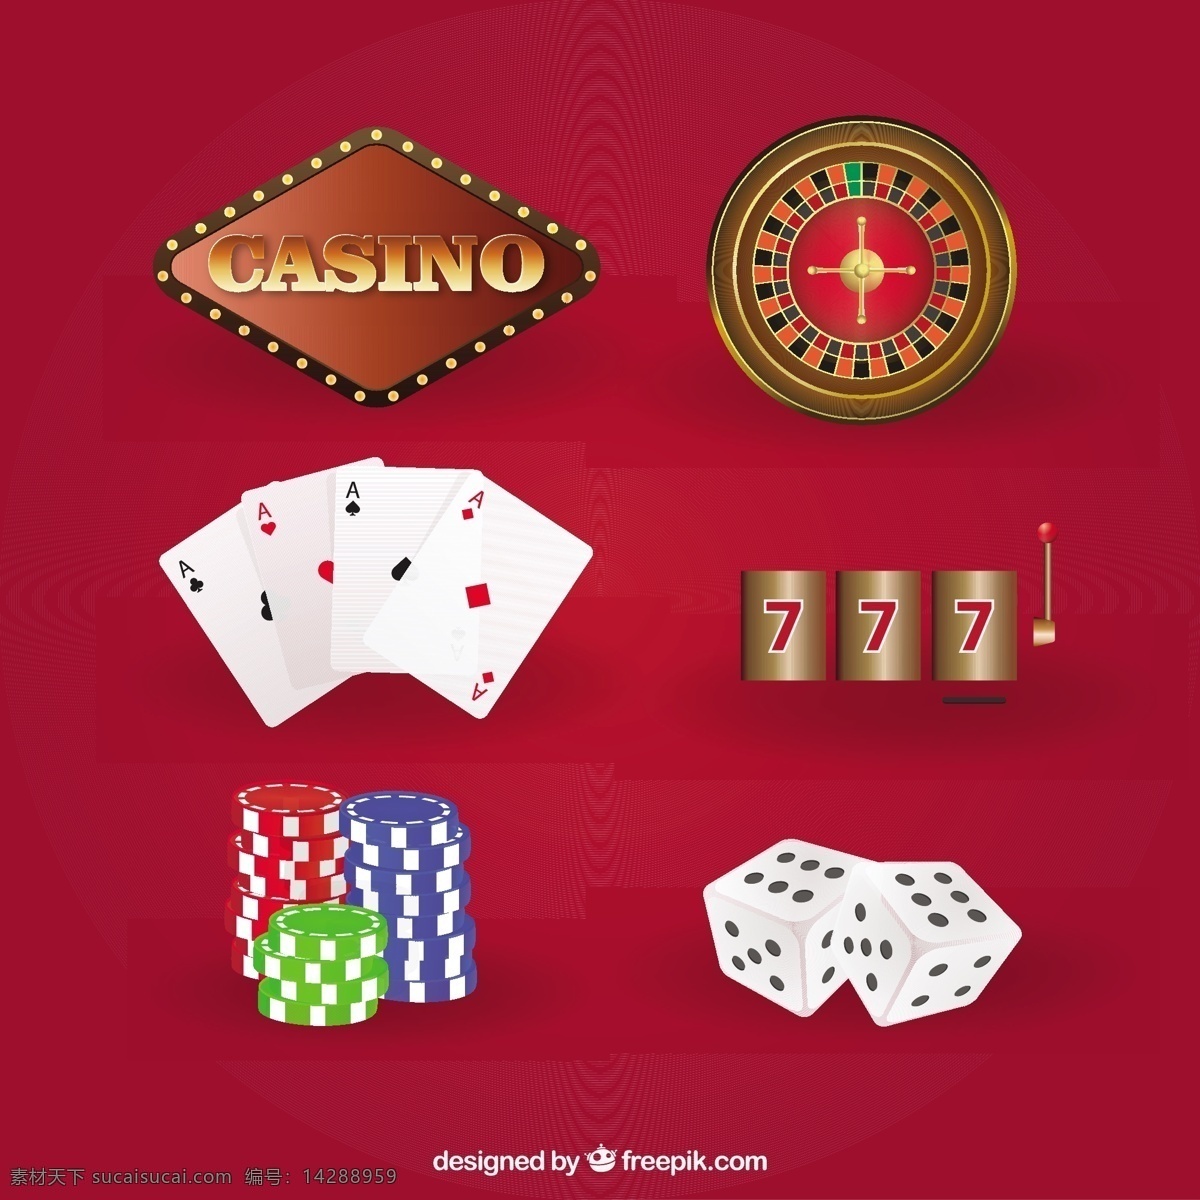 赌场 游戏 图标 矢量 游戏图标 矢量素材